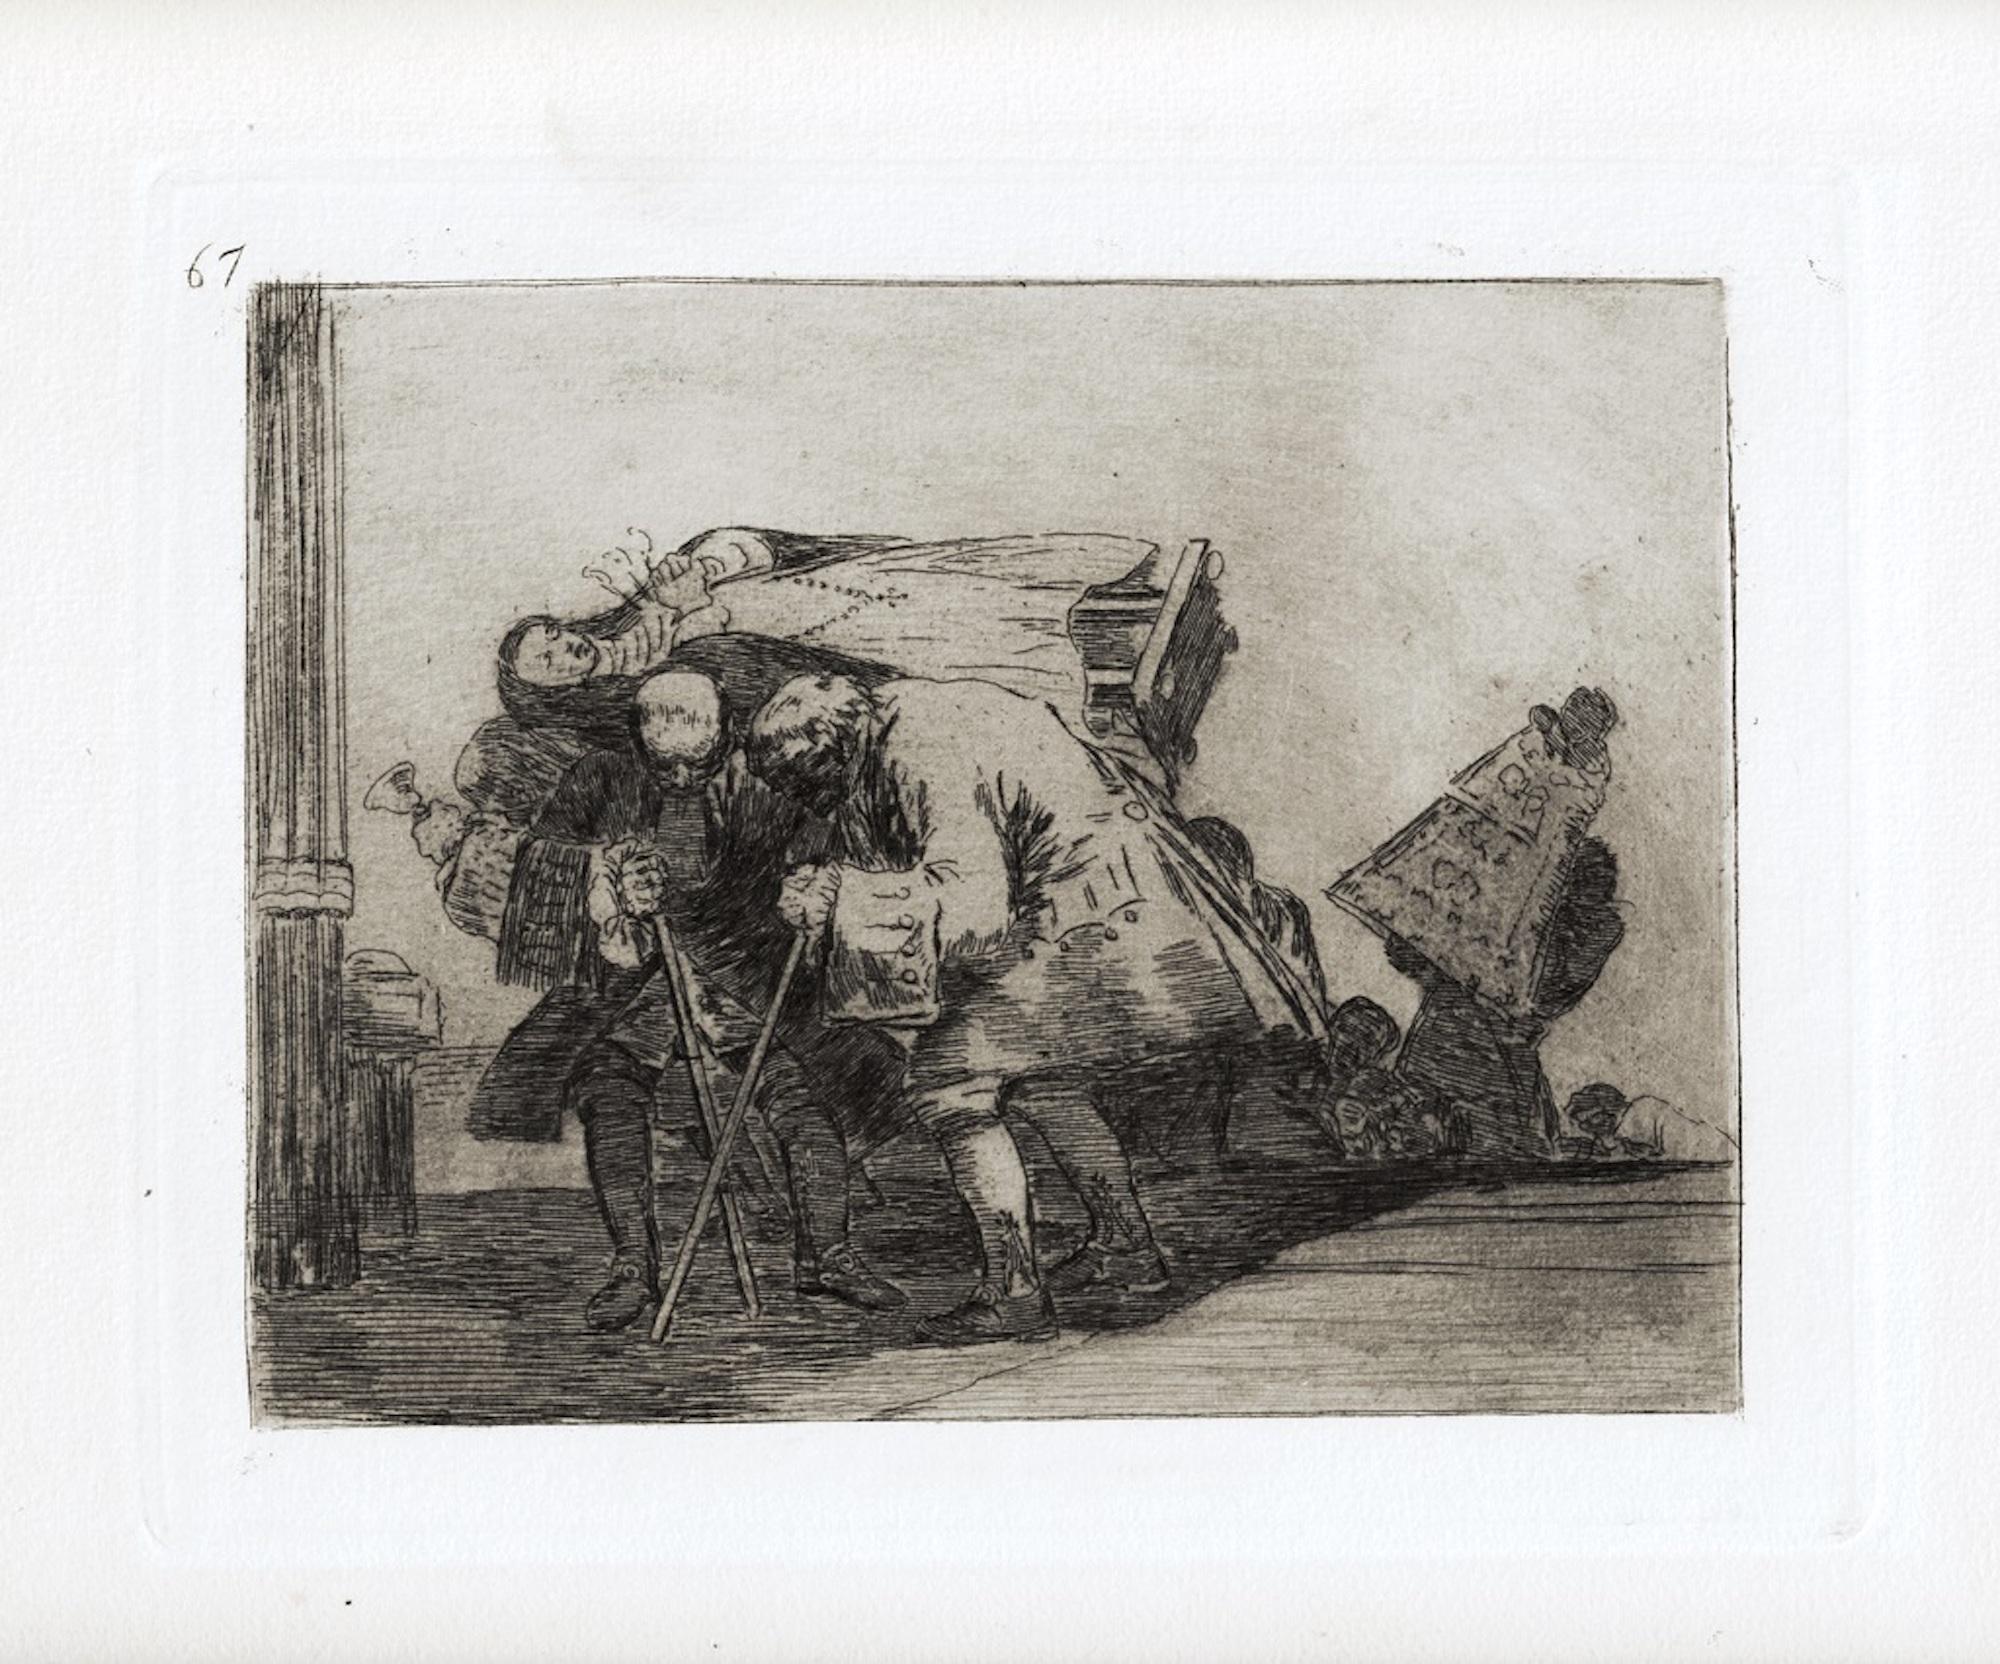 Esta no lo es menos est une œuvre d'art originale réalisée par le grand artiste espagnol Francisco Goya en 1810. 

Gravure originale sur papier. 

L'œuvre appartient à la célèbre série "Los Desastres de la Guerra" réalisée pendant les années de la